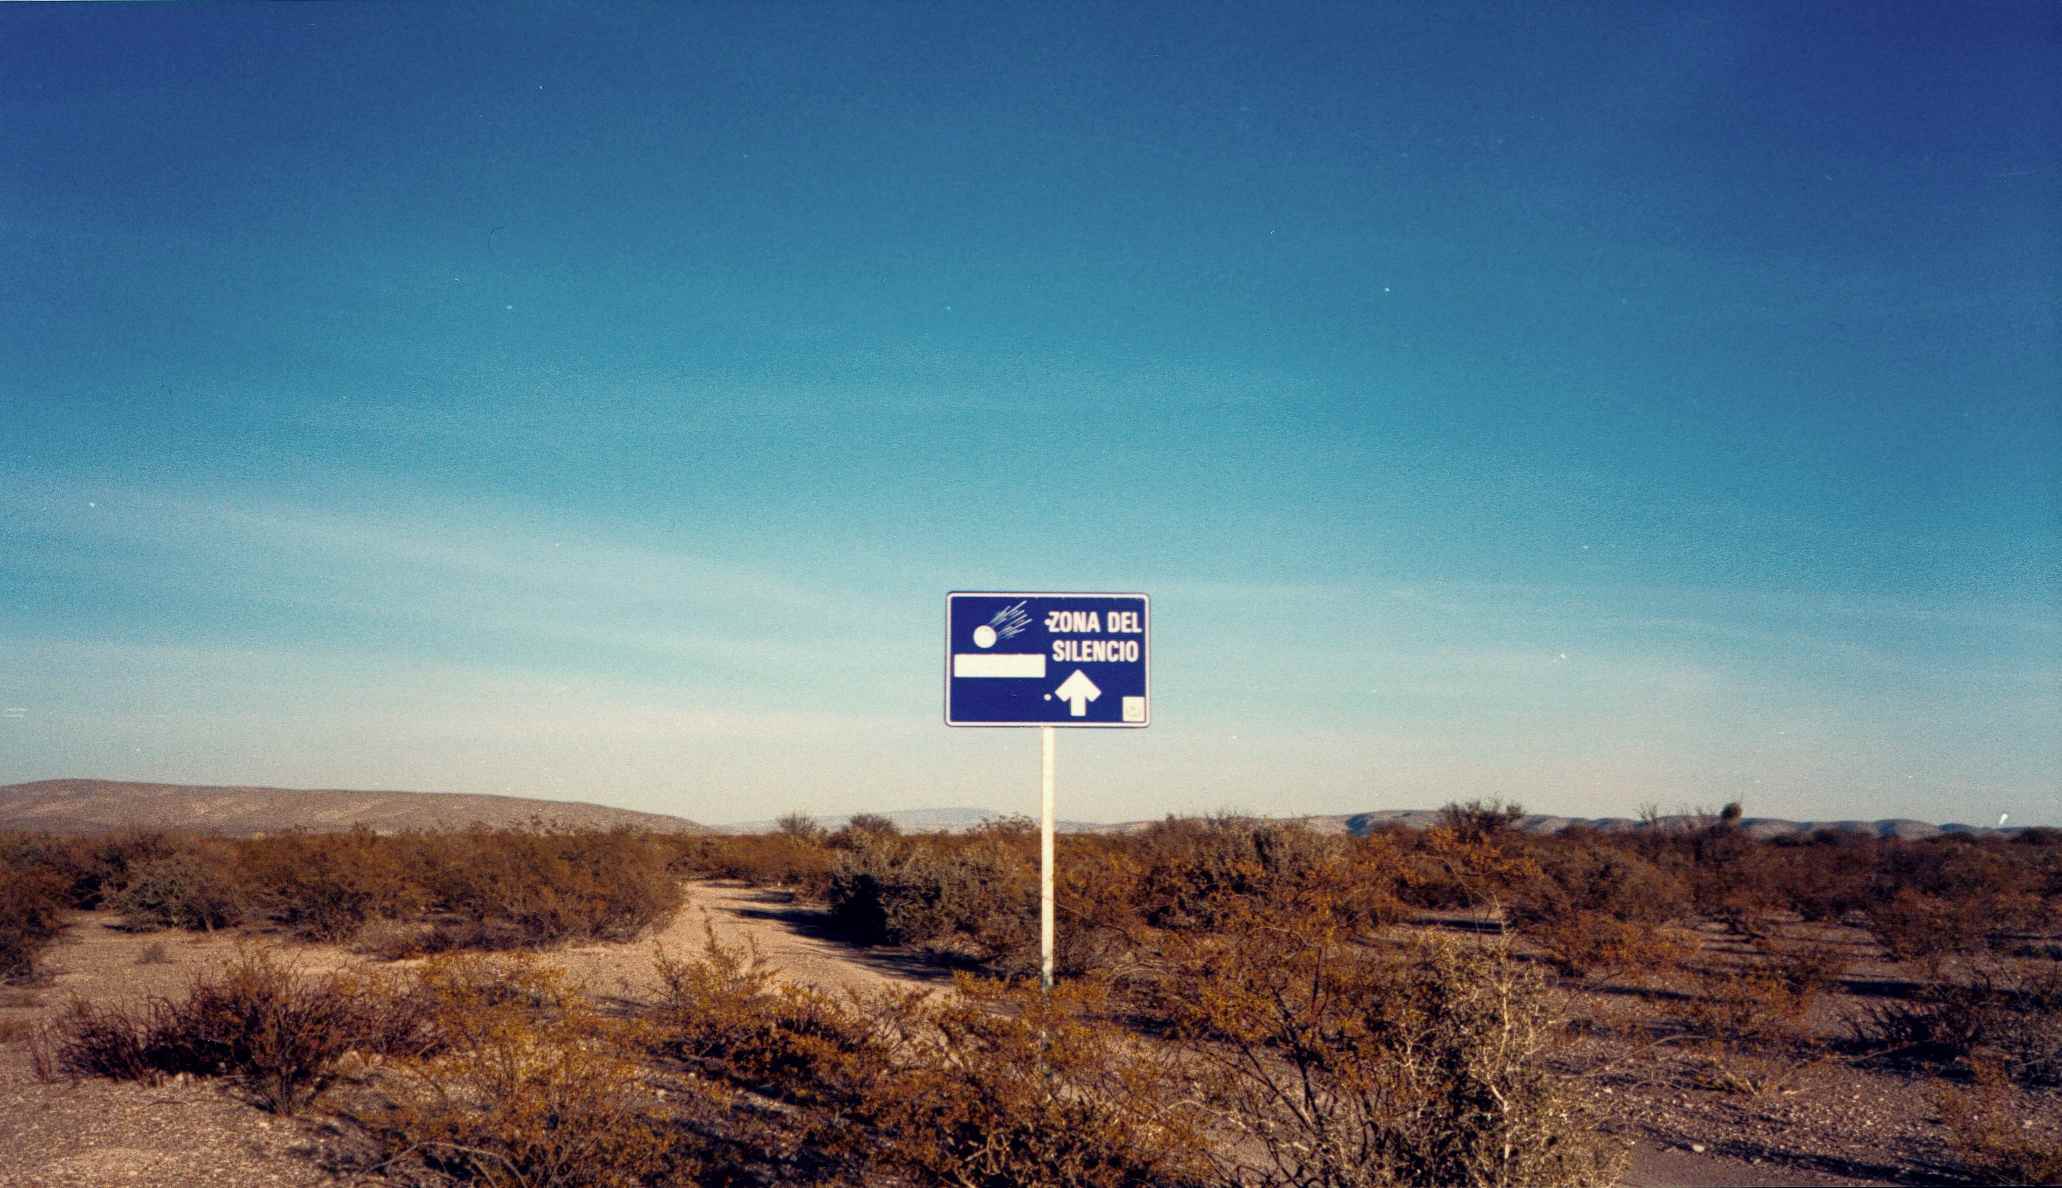 Zone Of Silence，Zona del Silencio，奇瓦瓦沙漠，北墨西哥